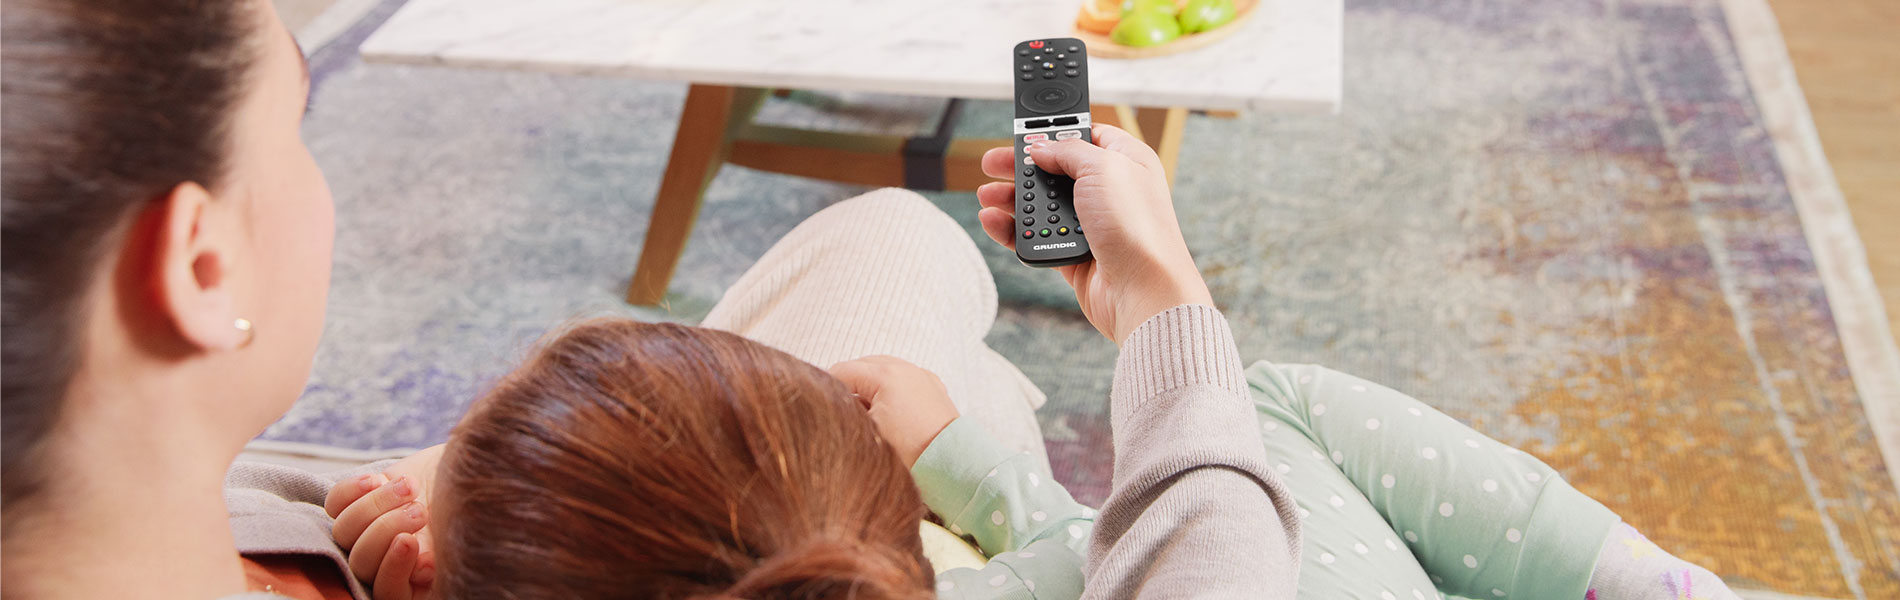 ¿Cuánta energía consume tu TV? Descubre cómo ahorrar energía